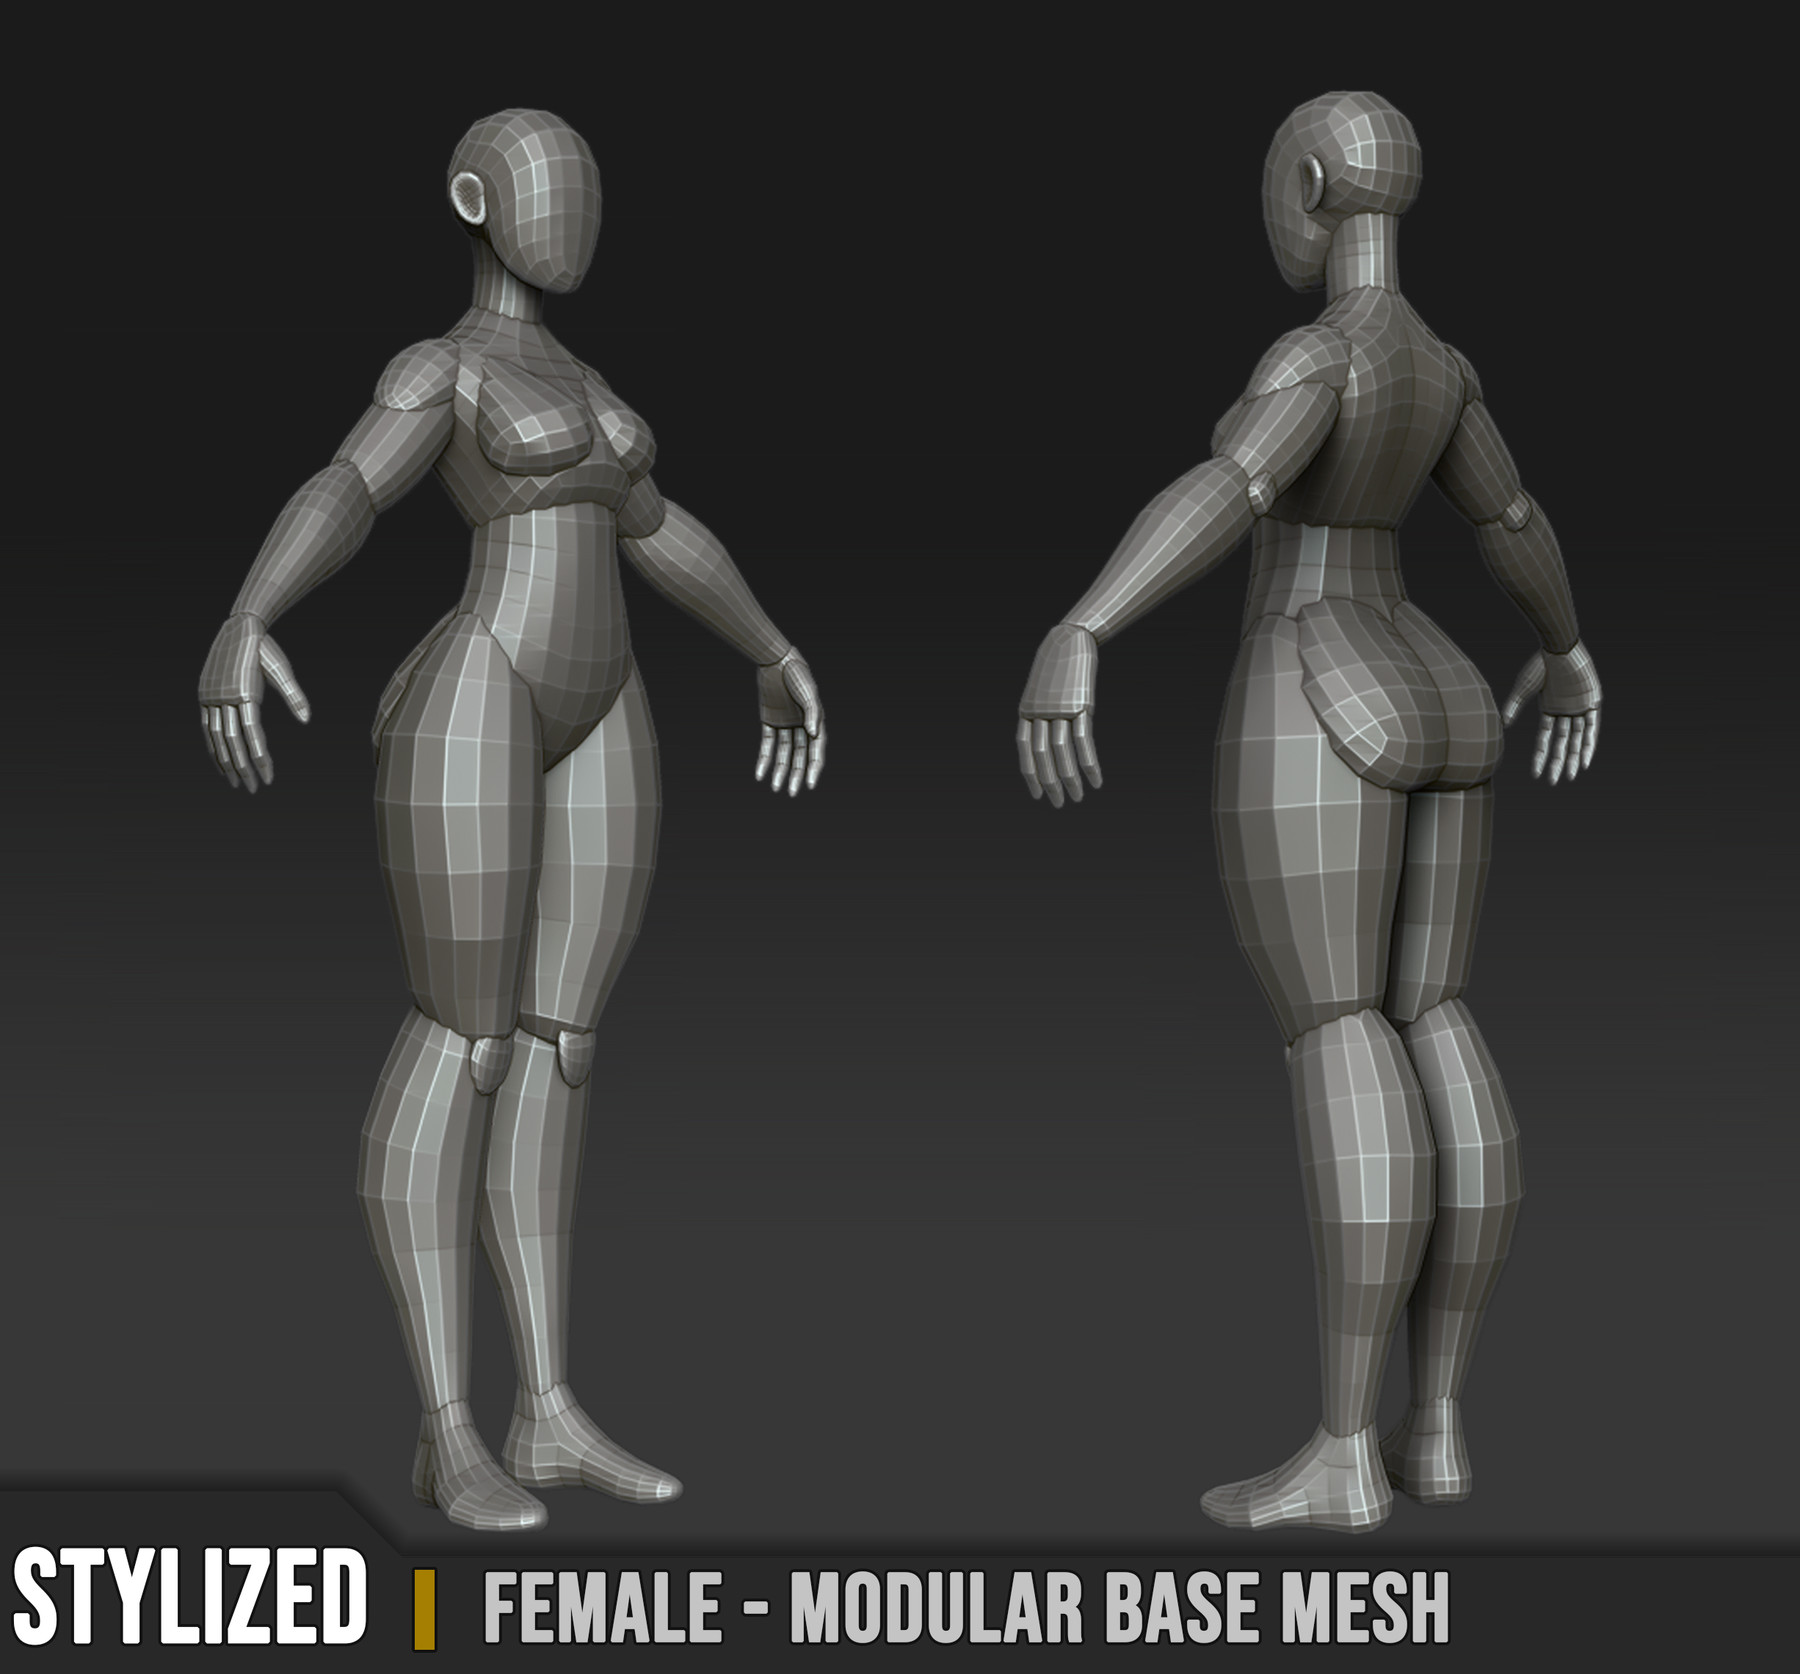 Female Custom Base Mesh 3d Model